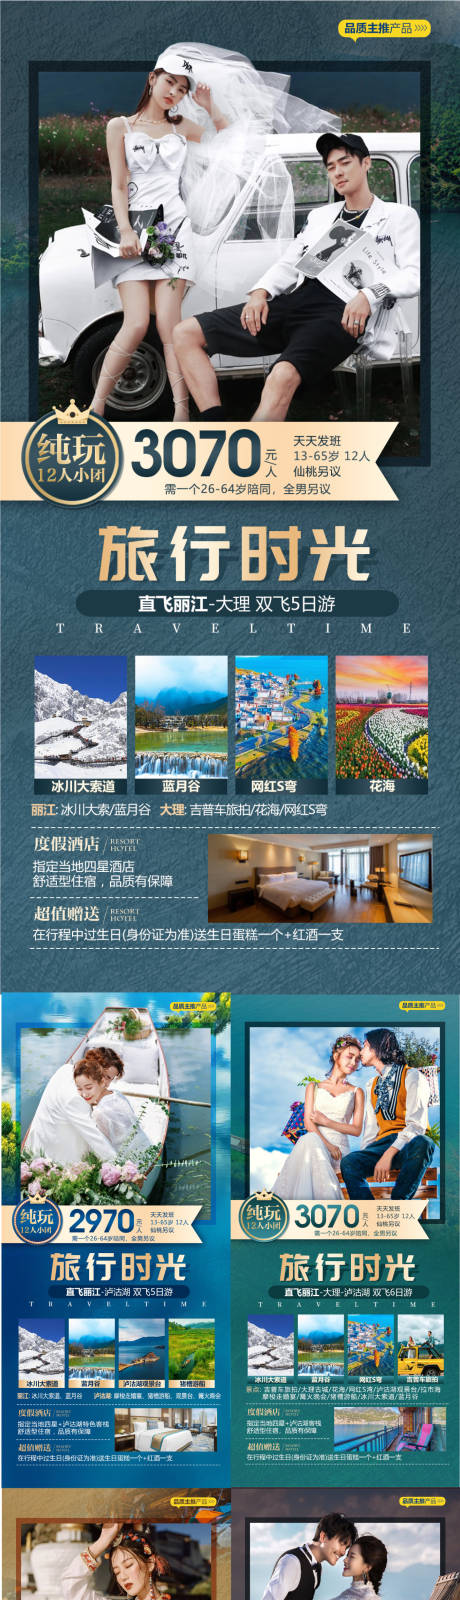 云南旅游系列海报